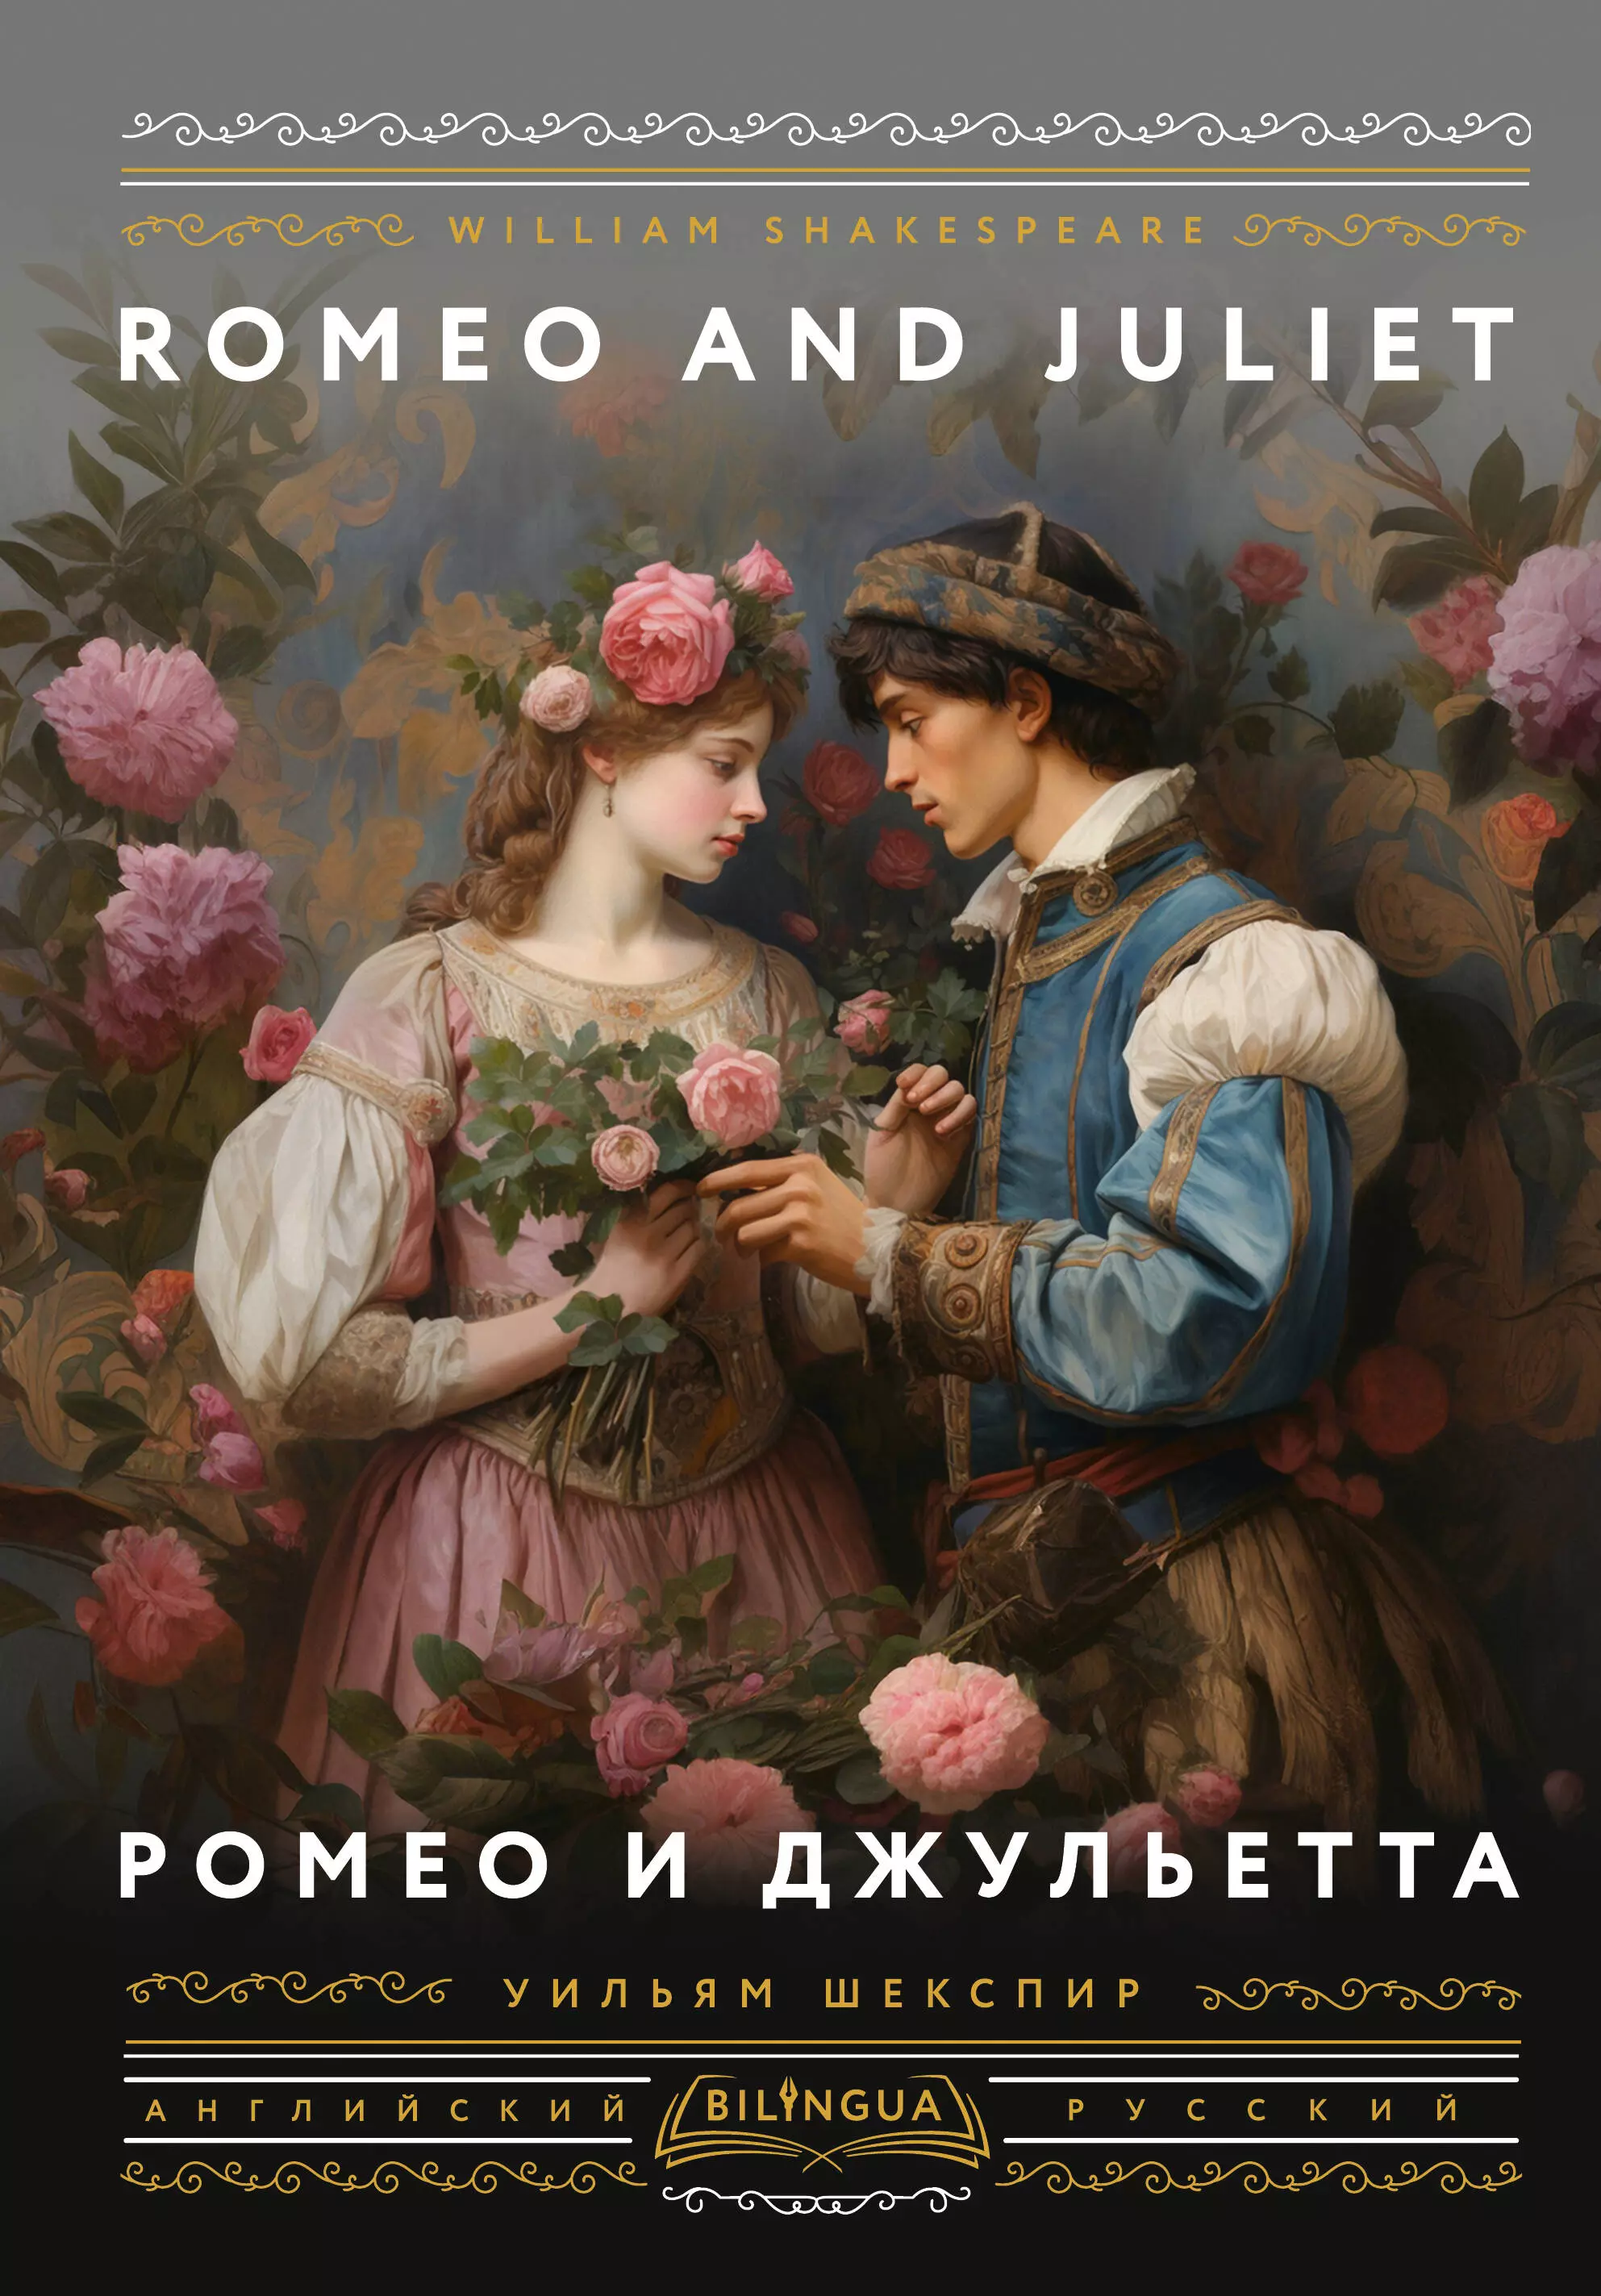 Ромео и Джульетта = Romeo and Juliet прокофьев ромео и джульета london symphony orchestra андре превин prokofiev romeo and juliet